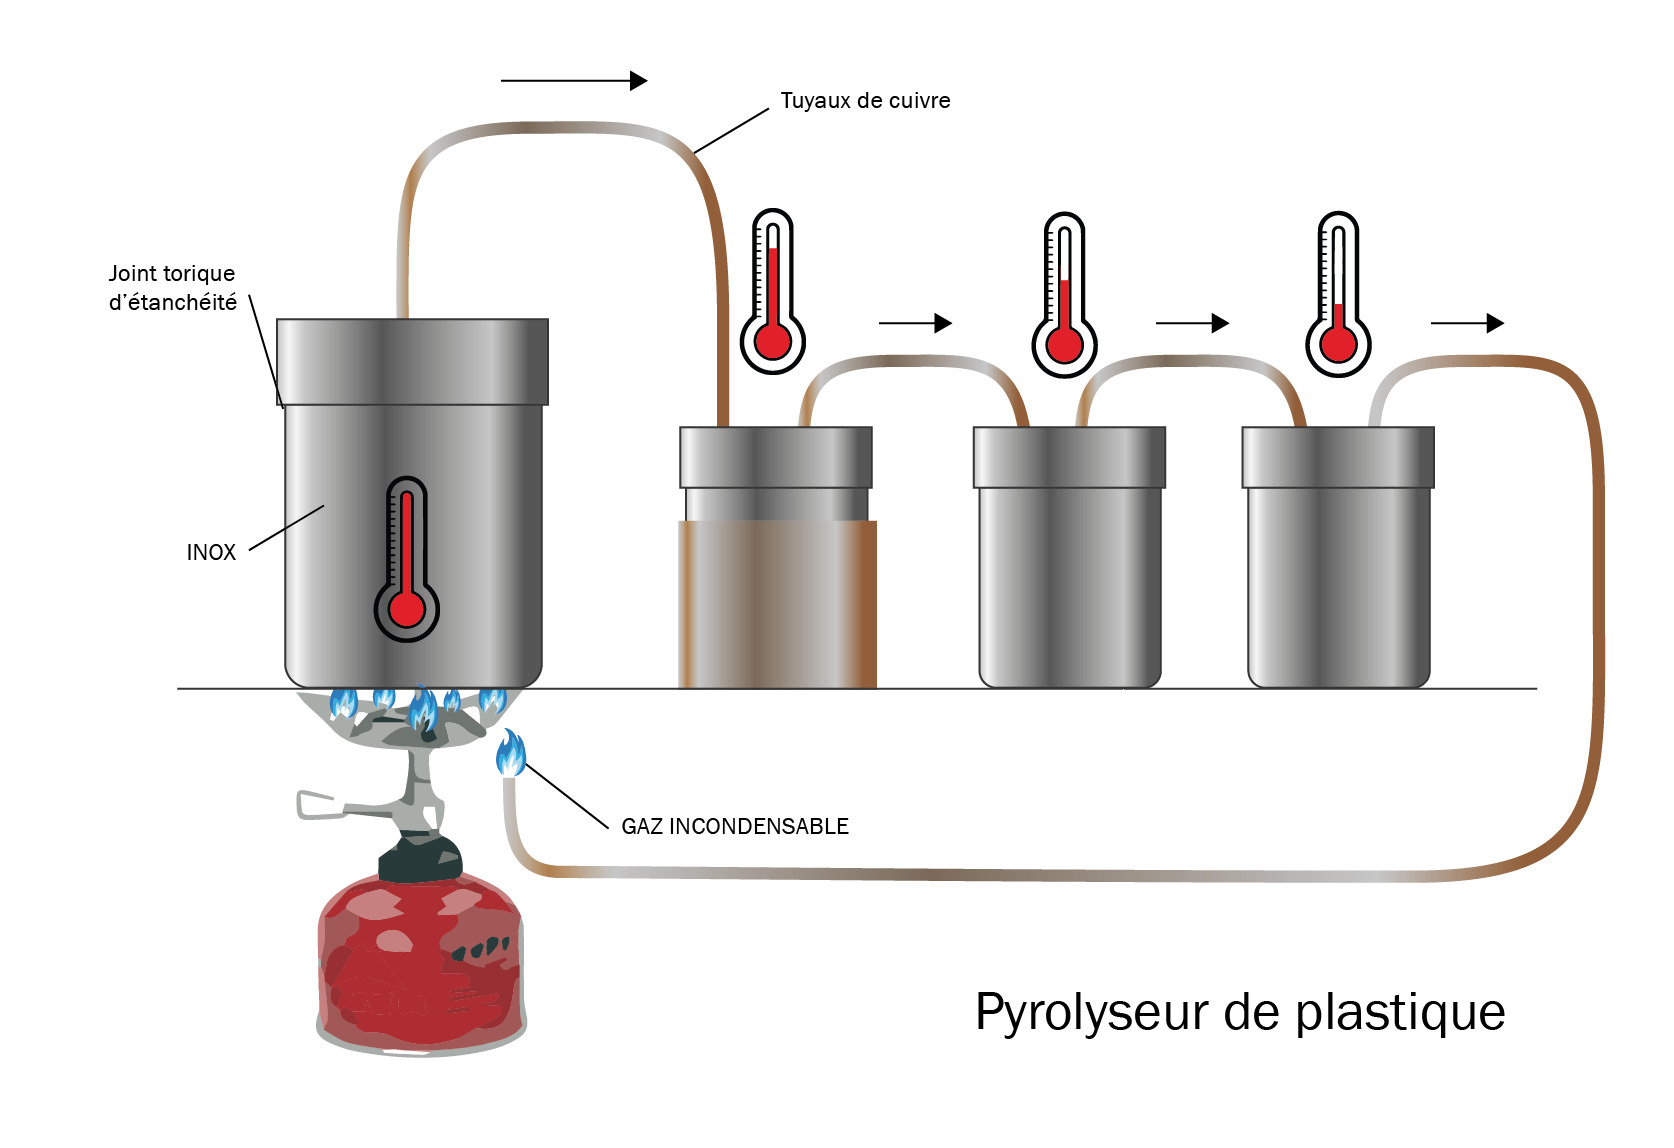 Pyrolyseur_de_plastique.png